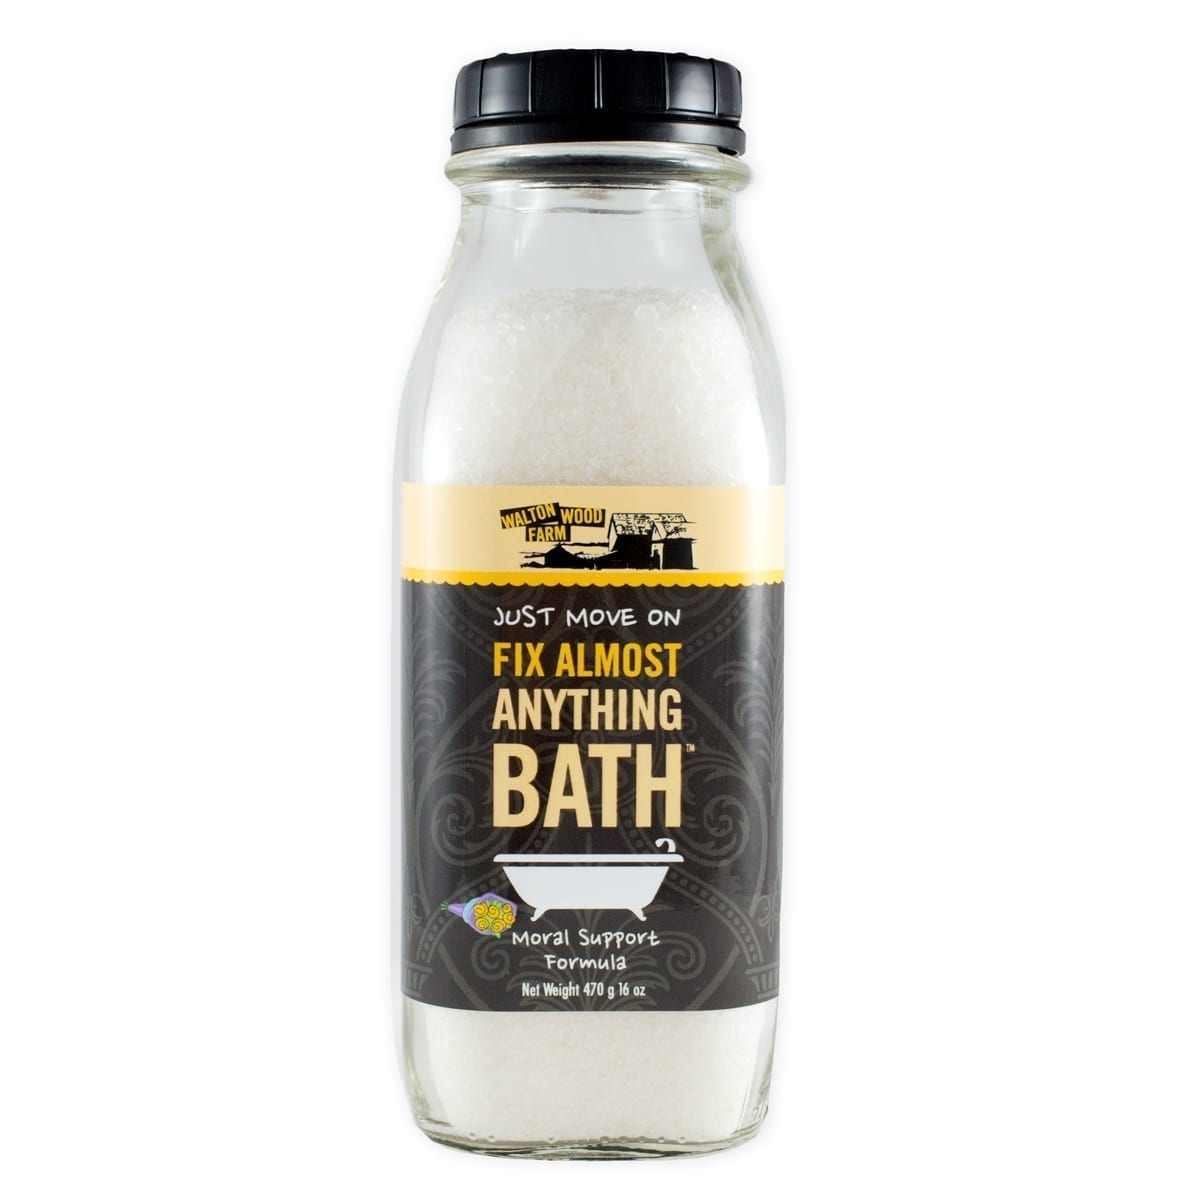 Walton Wood Bath Salt